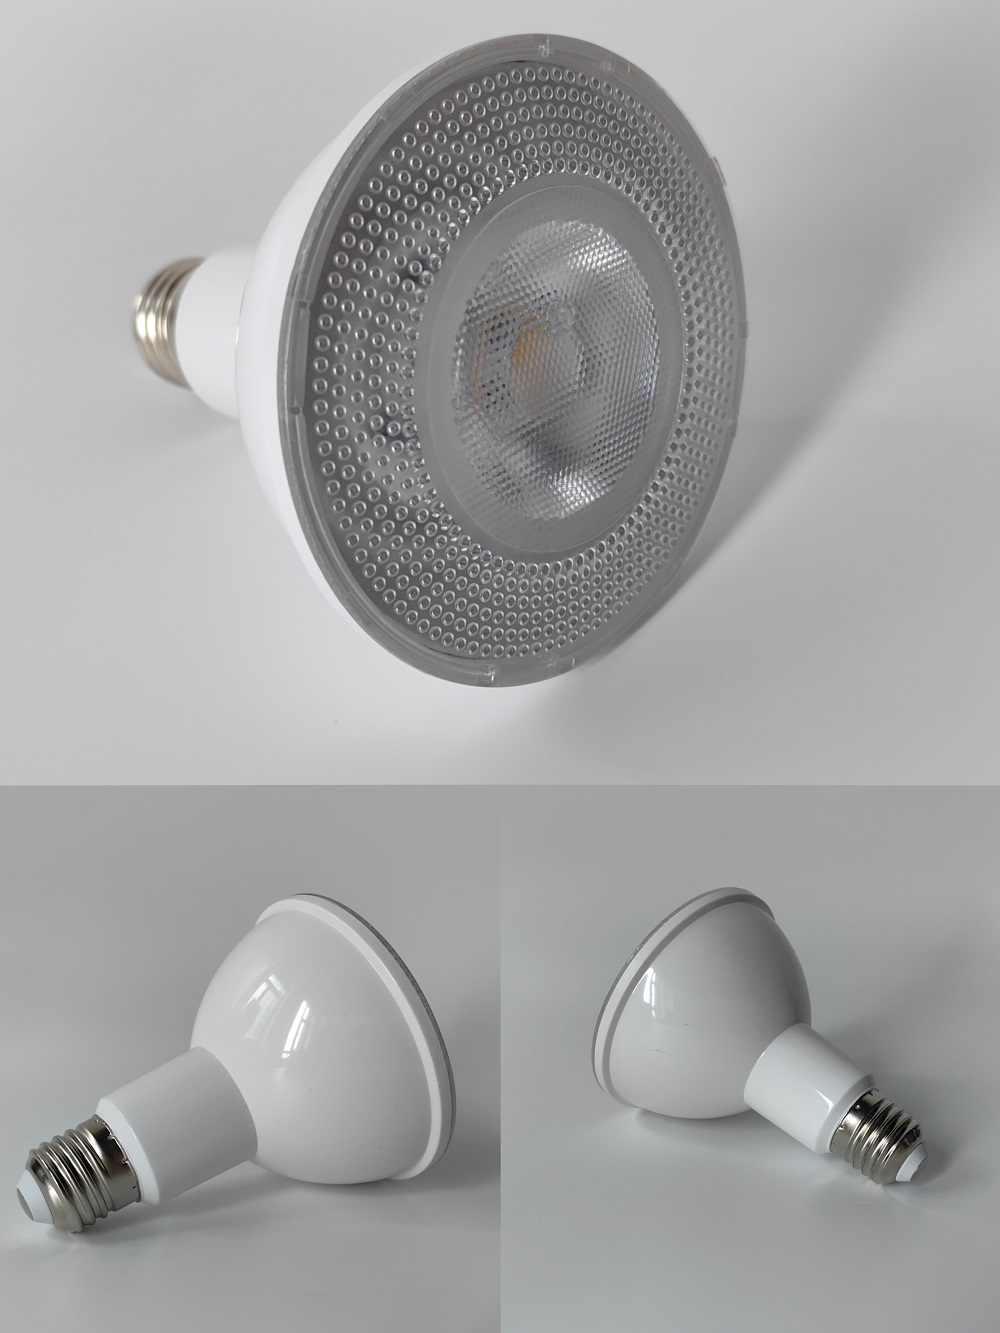 HHP-003 LED Bulb Par30